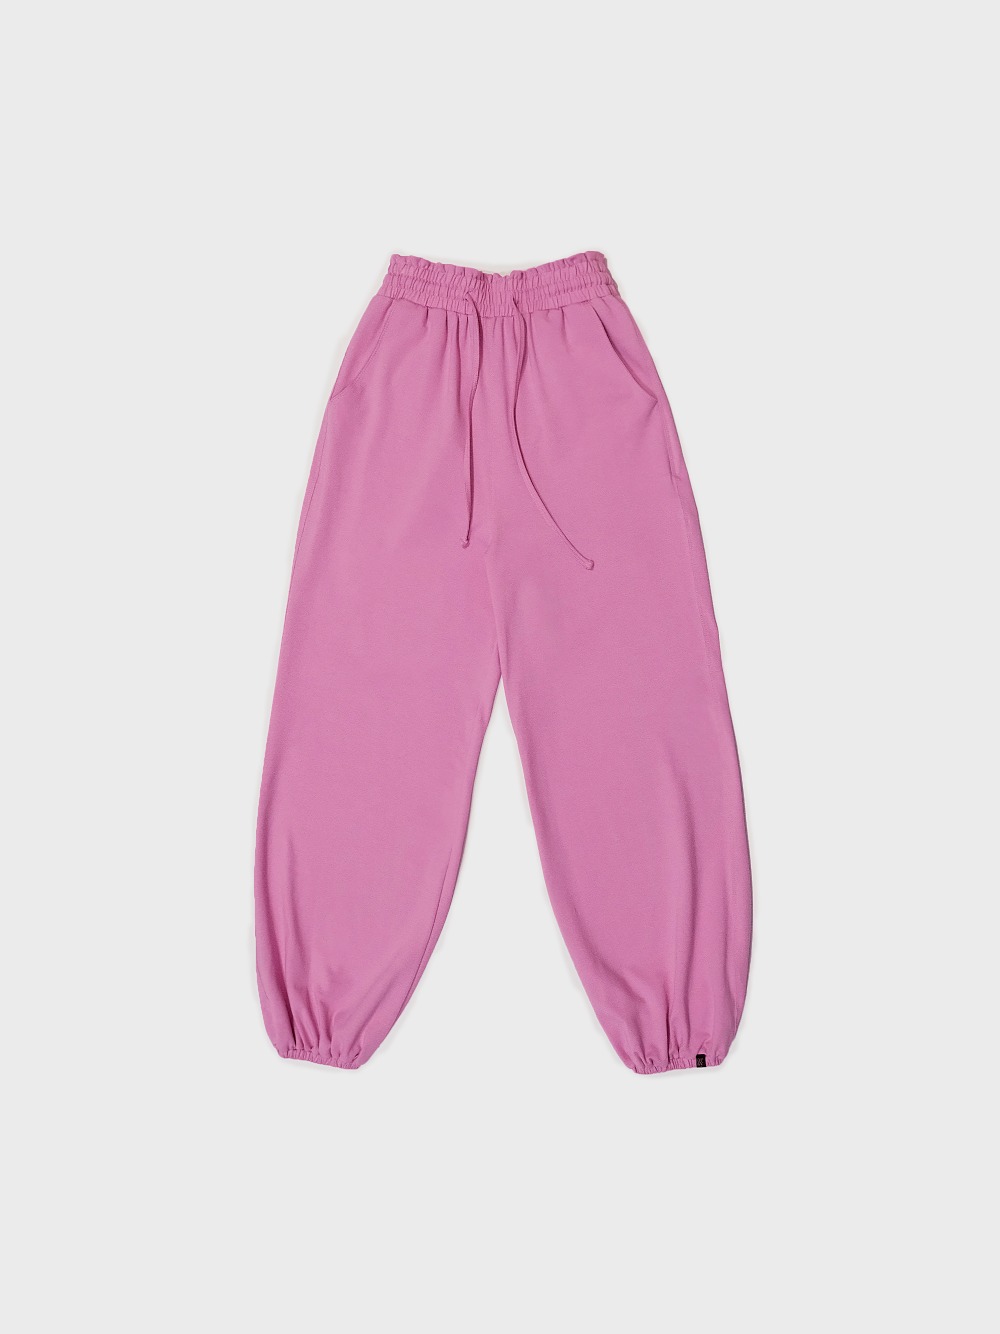 [3차] Ruffle banding pants - berry pink